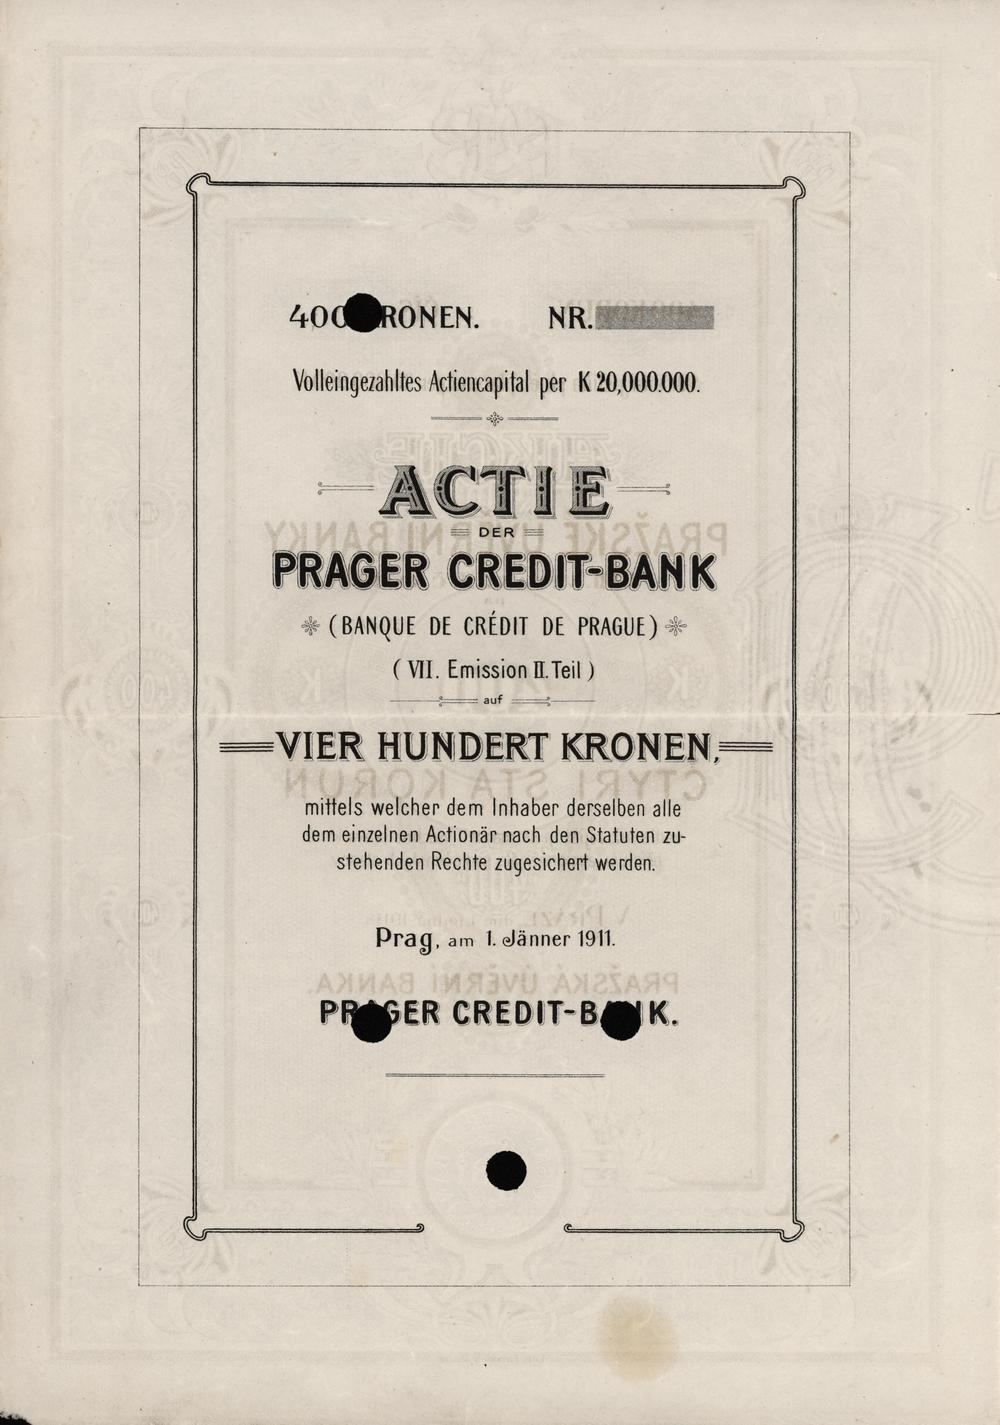 Aktie der Prager Credit-Bank in Prag 1911, 7. Emission, II. Teil, 400 Kronen